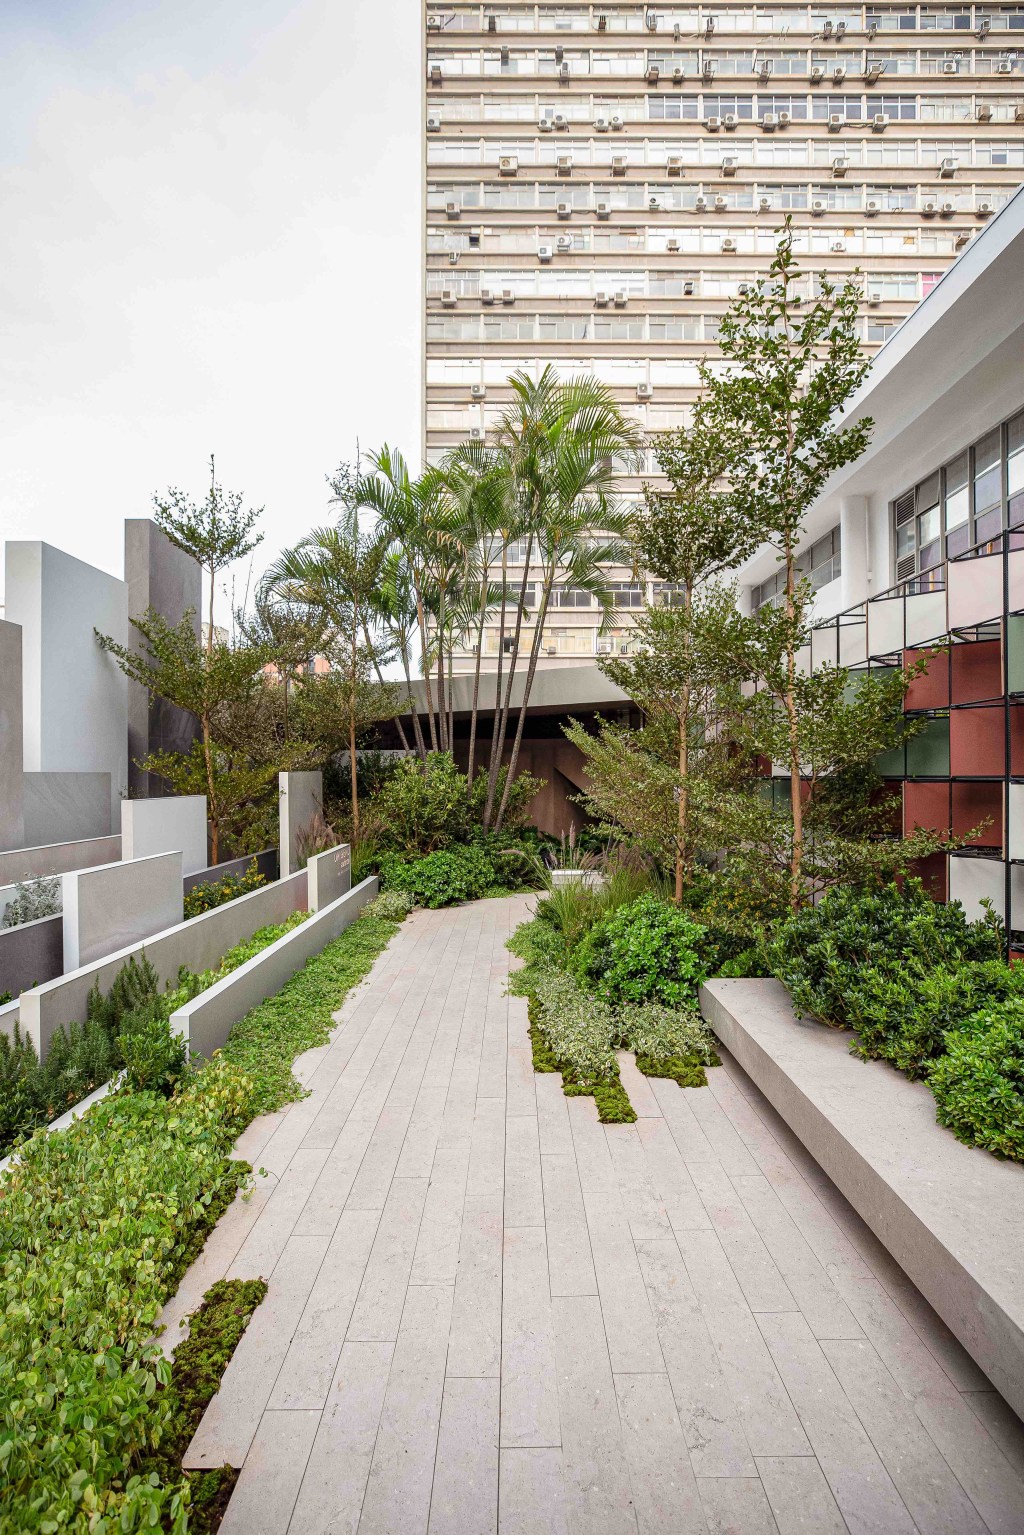 Alex Hanazaki - Origens Portinari por Alex Hanazaki. Projeto da CASACOR São Paulo 2023. Na foto, jardim no rooftop com peças cerâmicas.